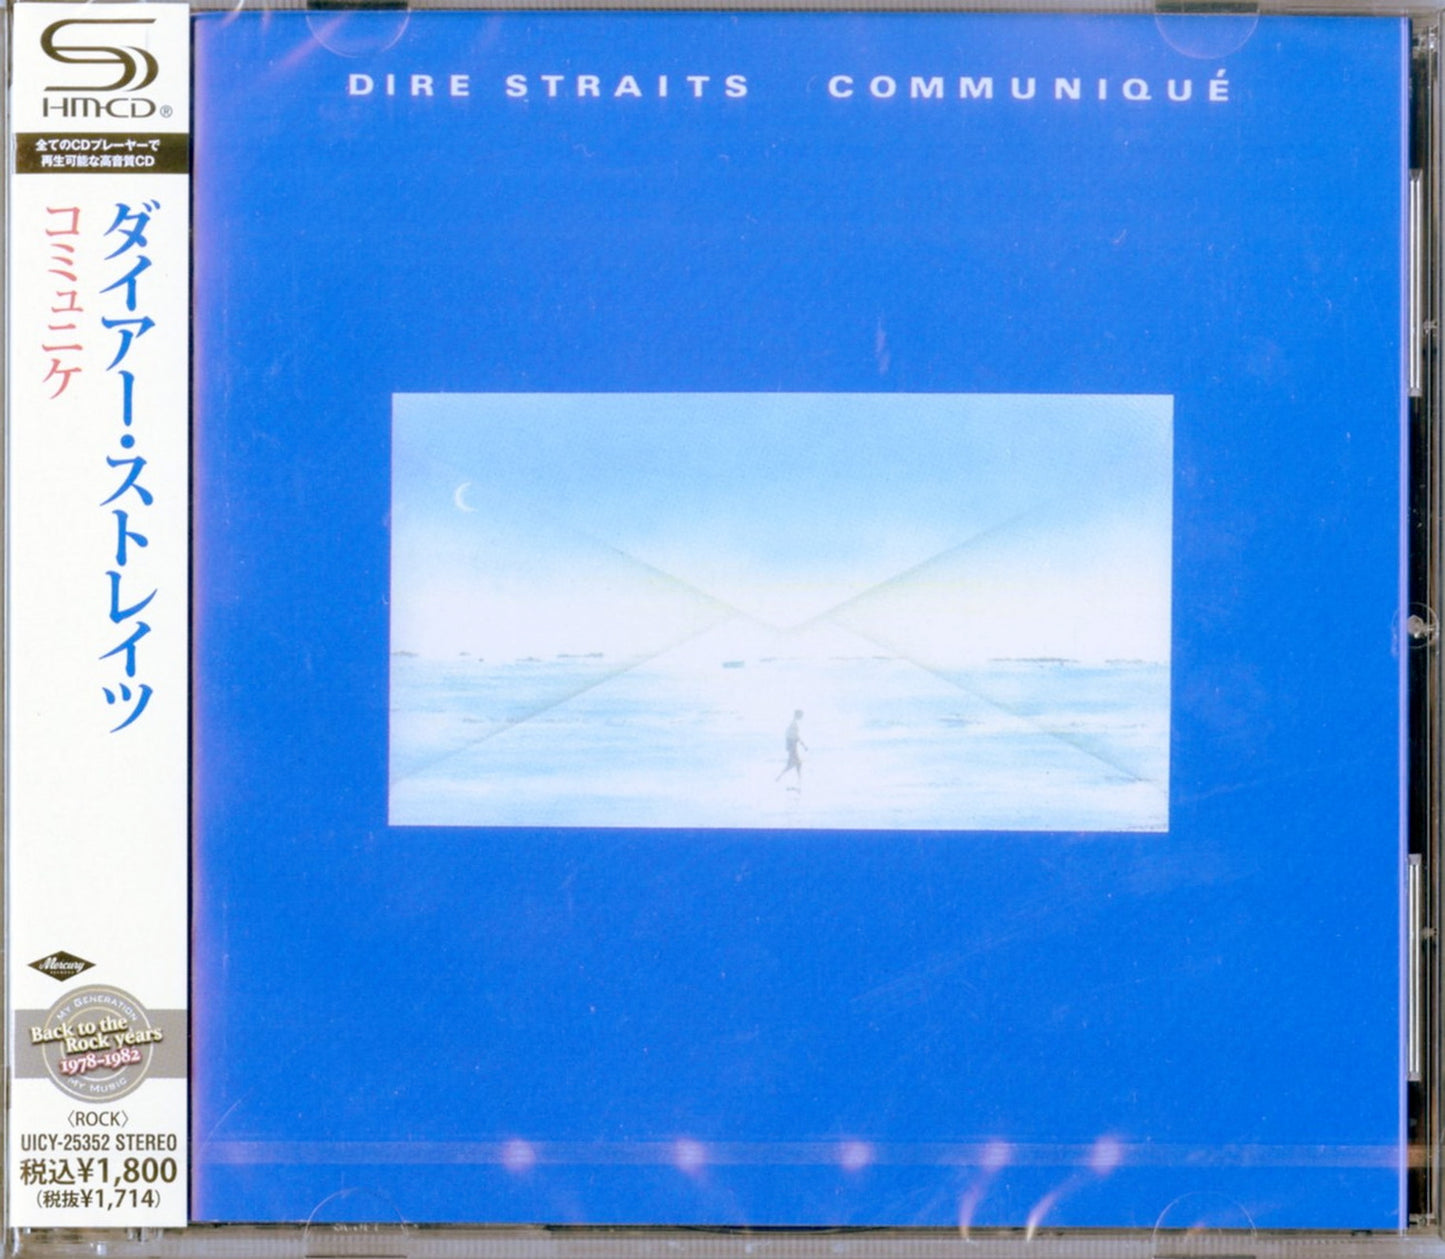 Dire Straits - Communique - SHM-CD